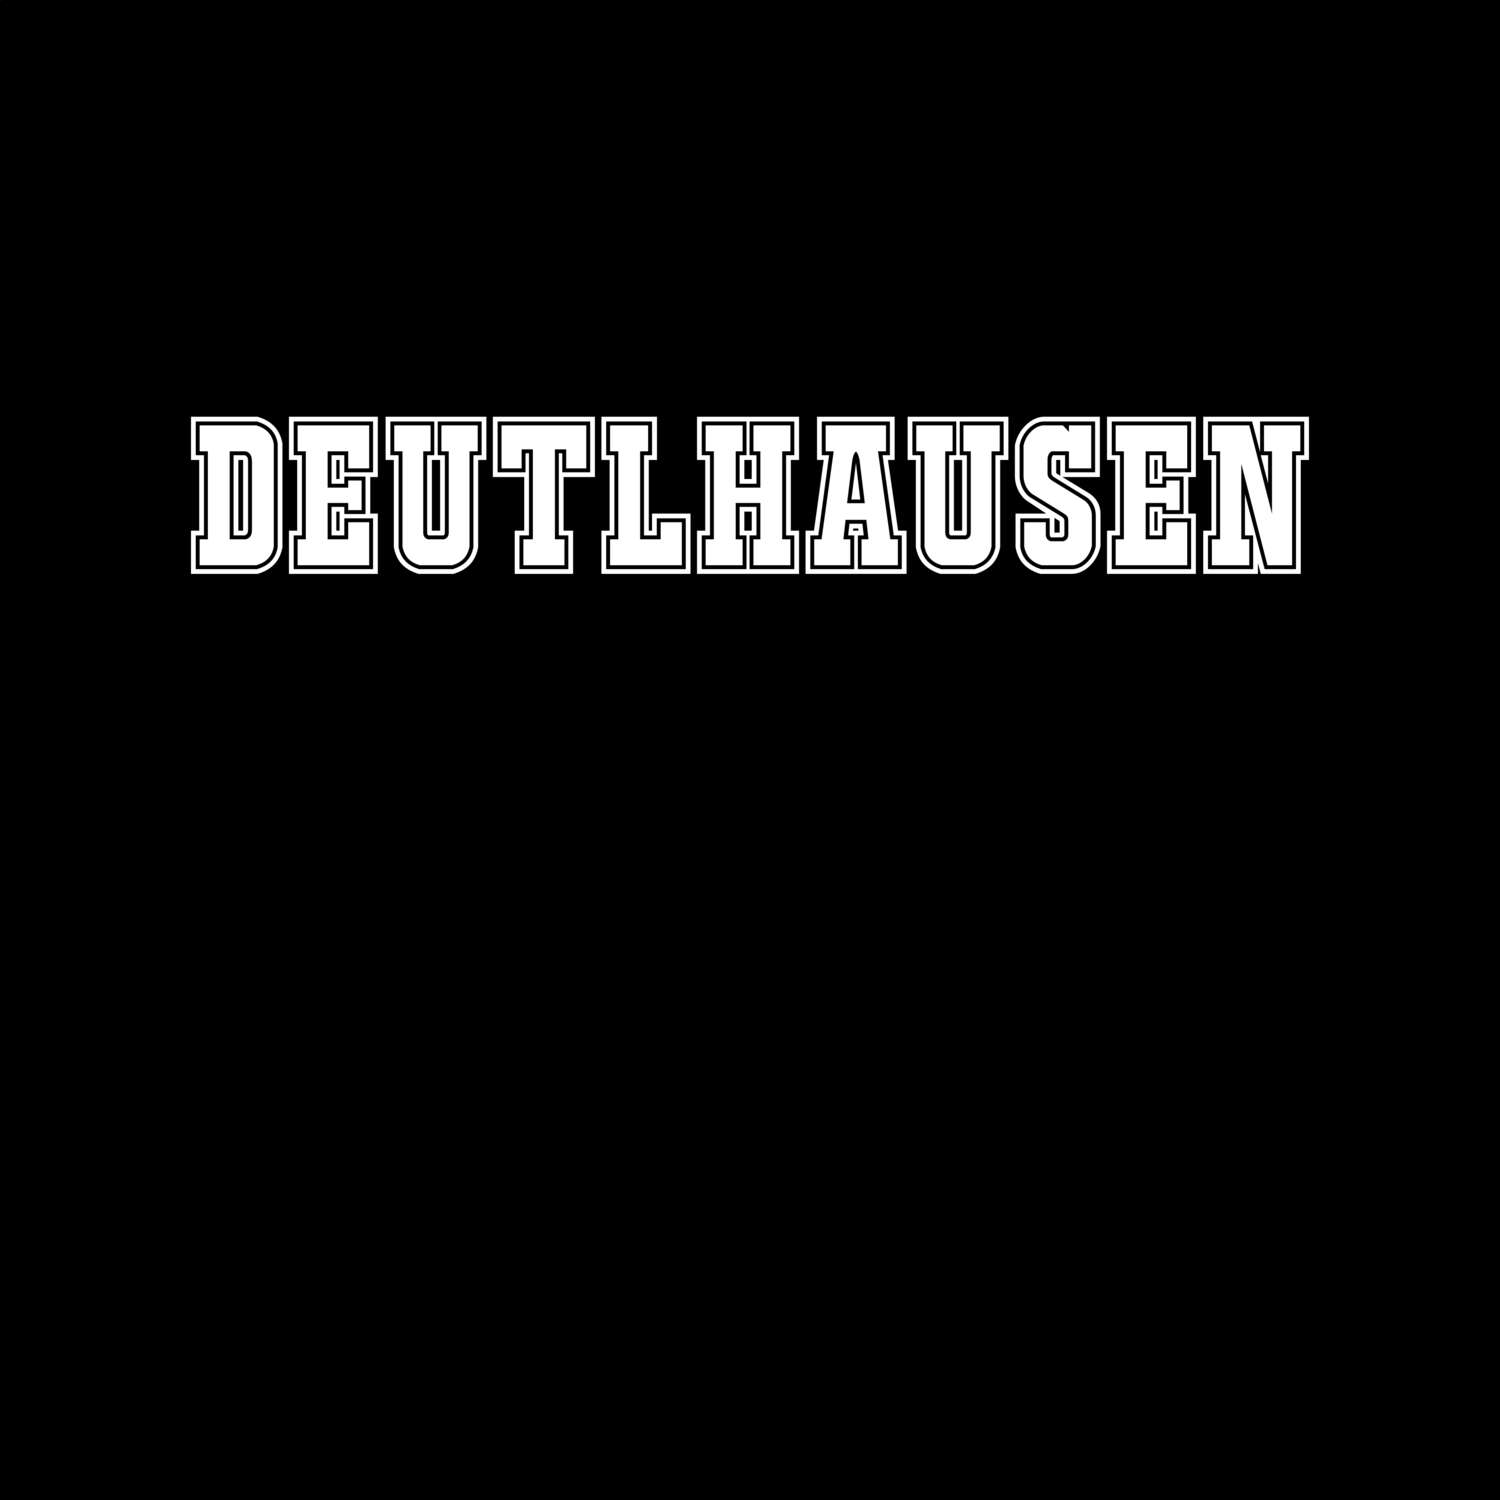 Deutlhausen T-Shirt »Classic«